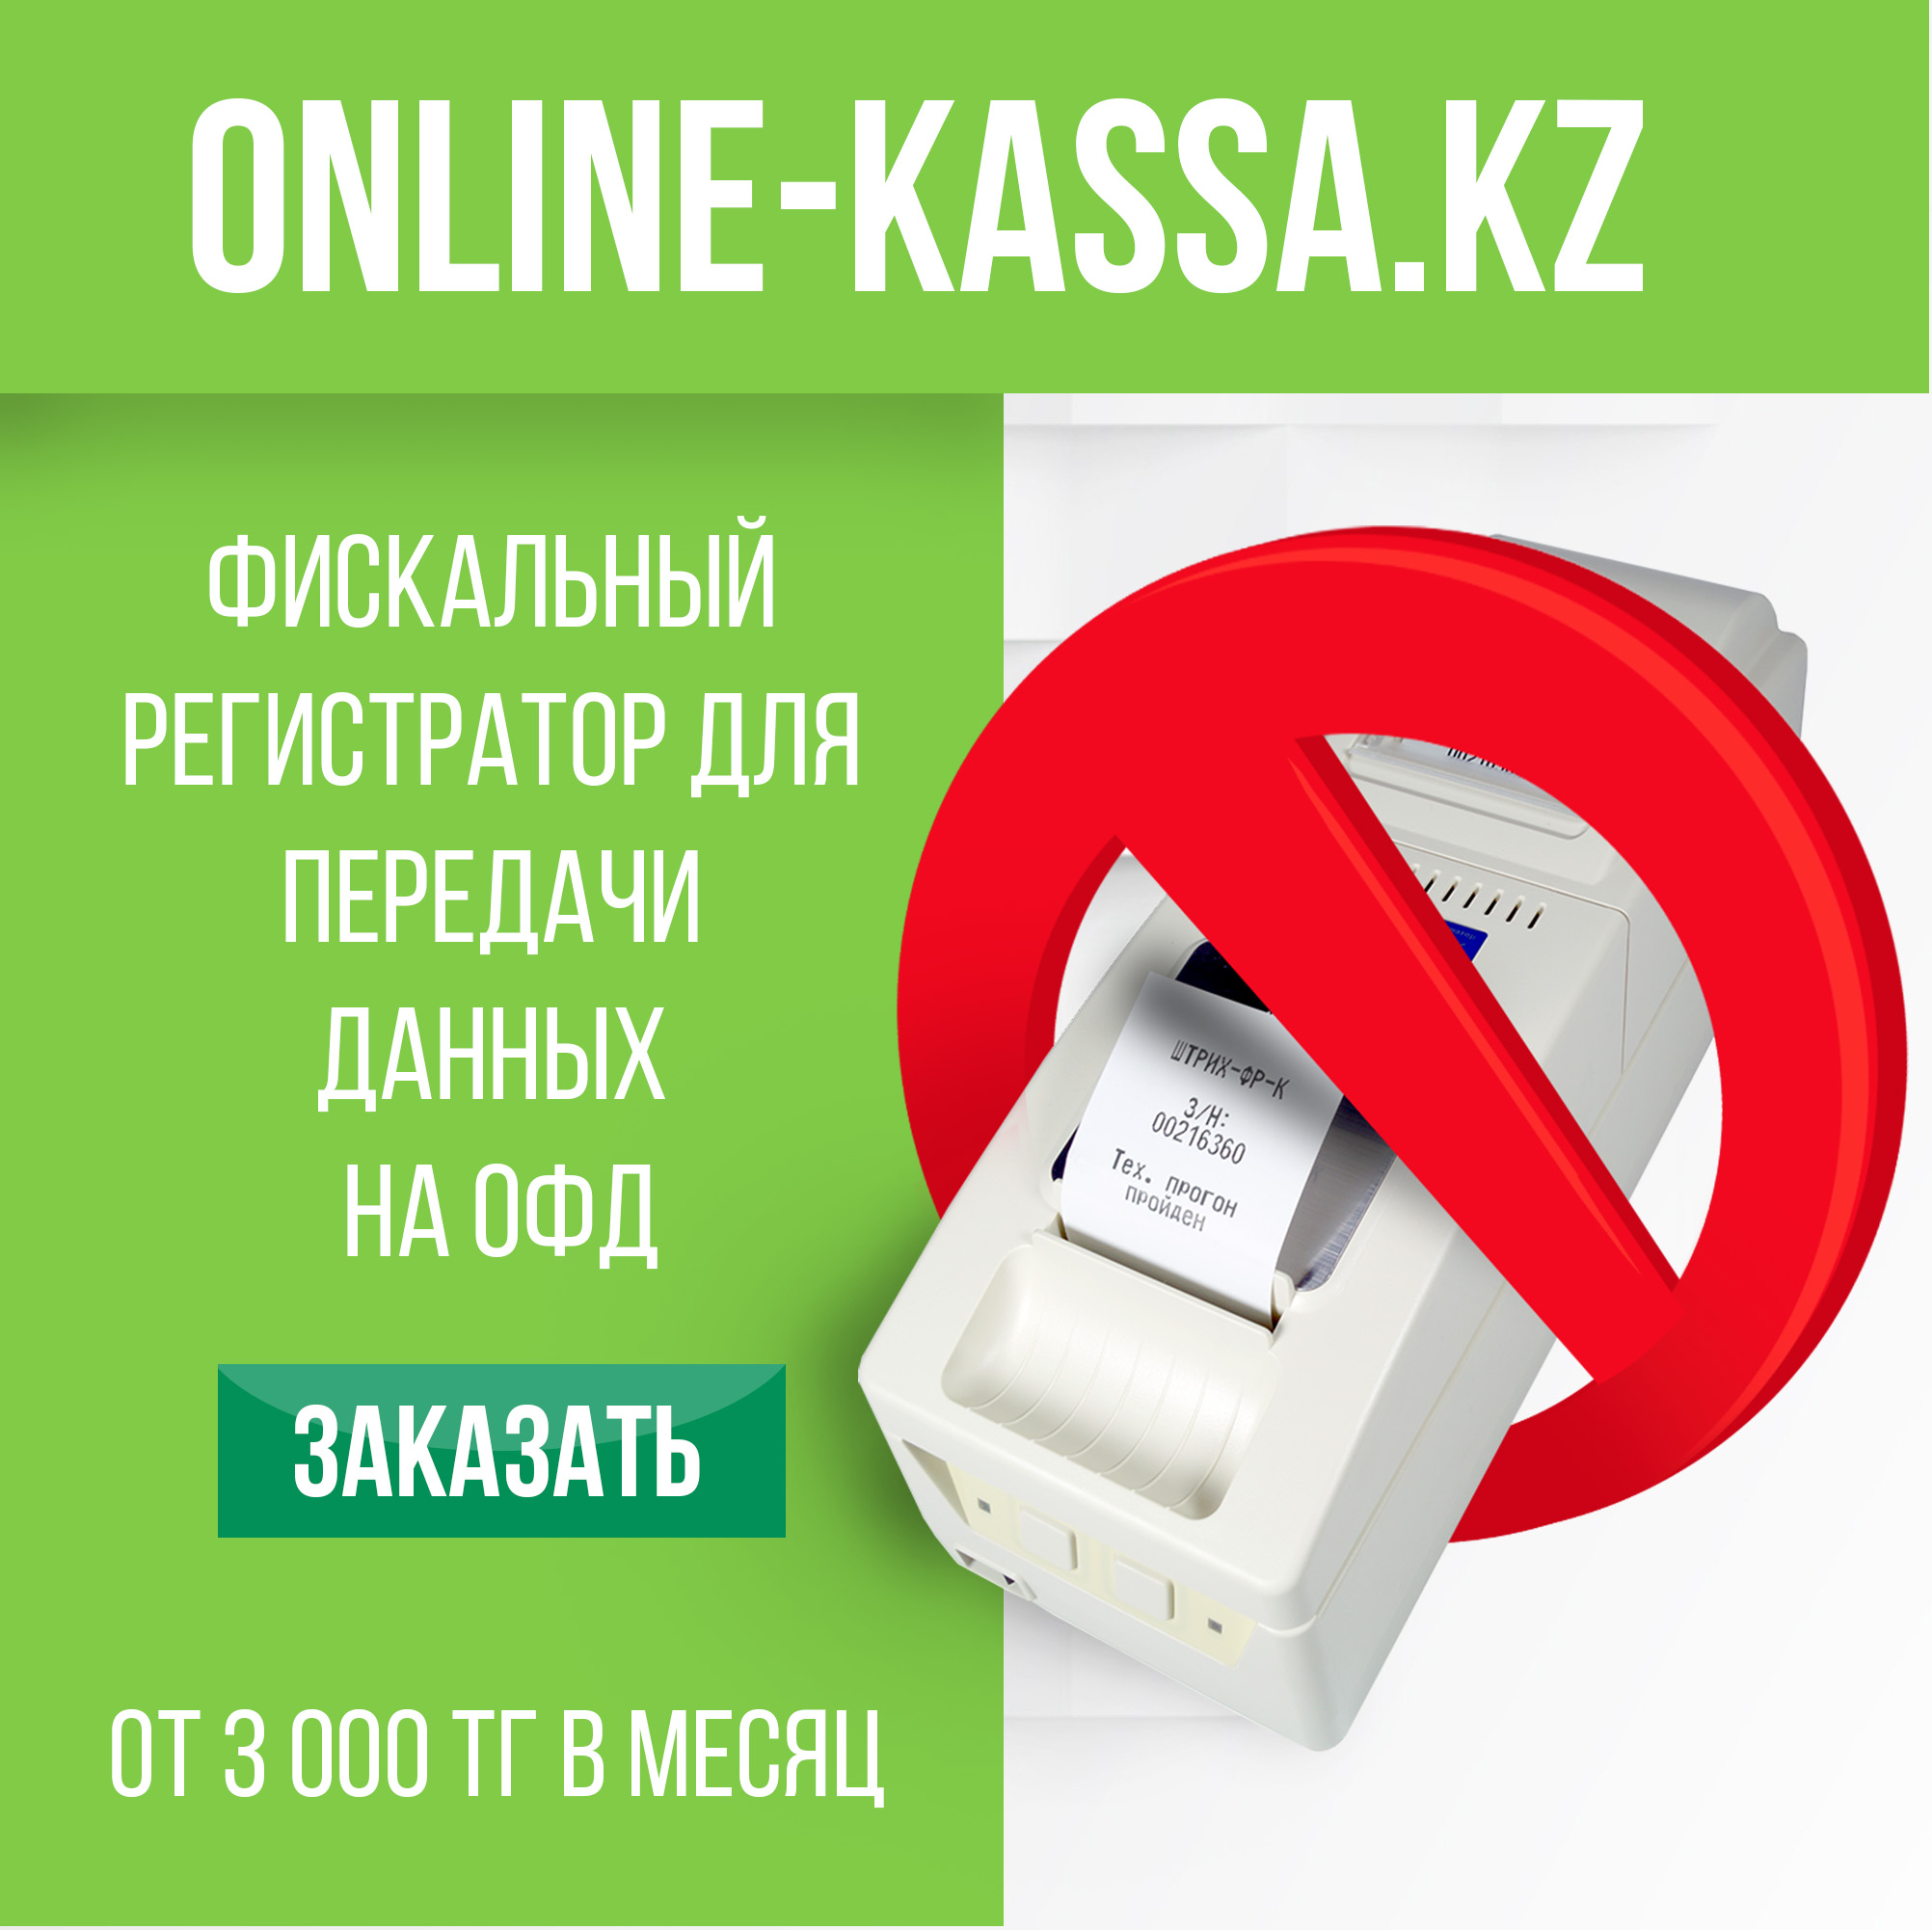 Online-kassa